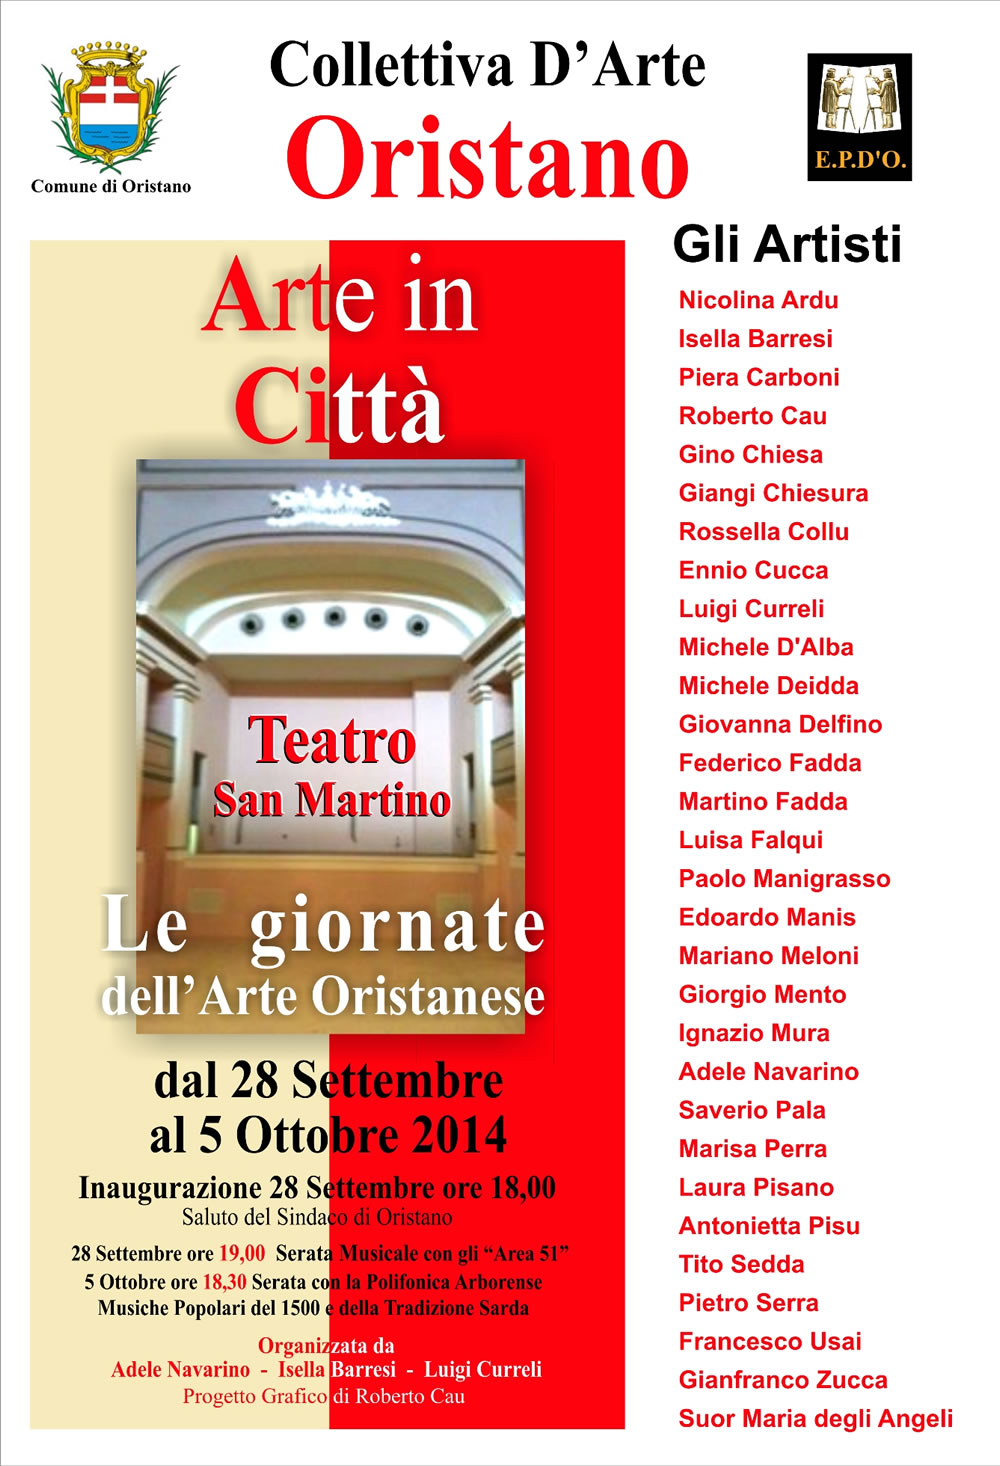 Collettiva D'Arte Teatro San Martino Oristano